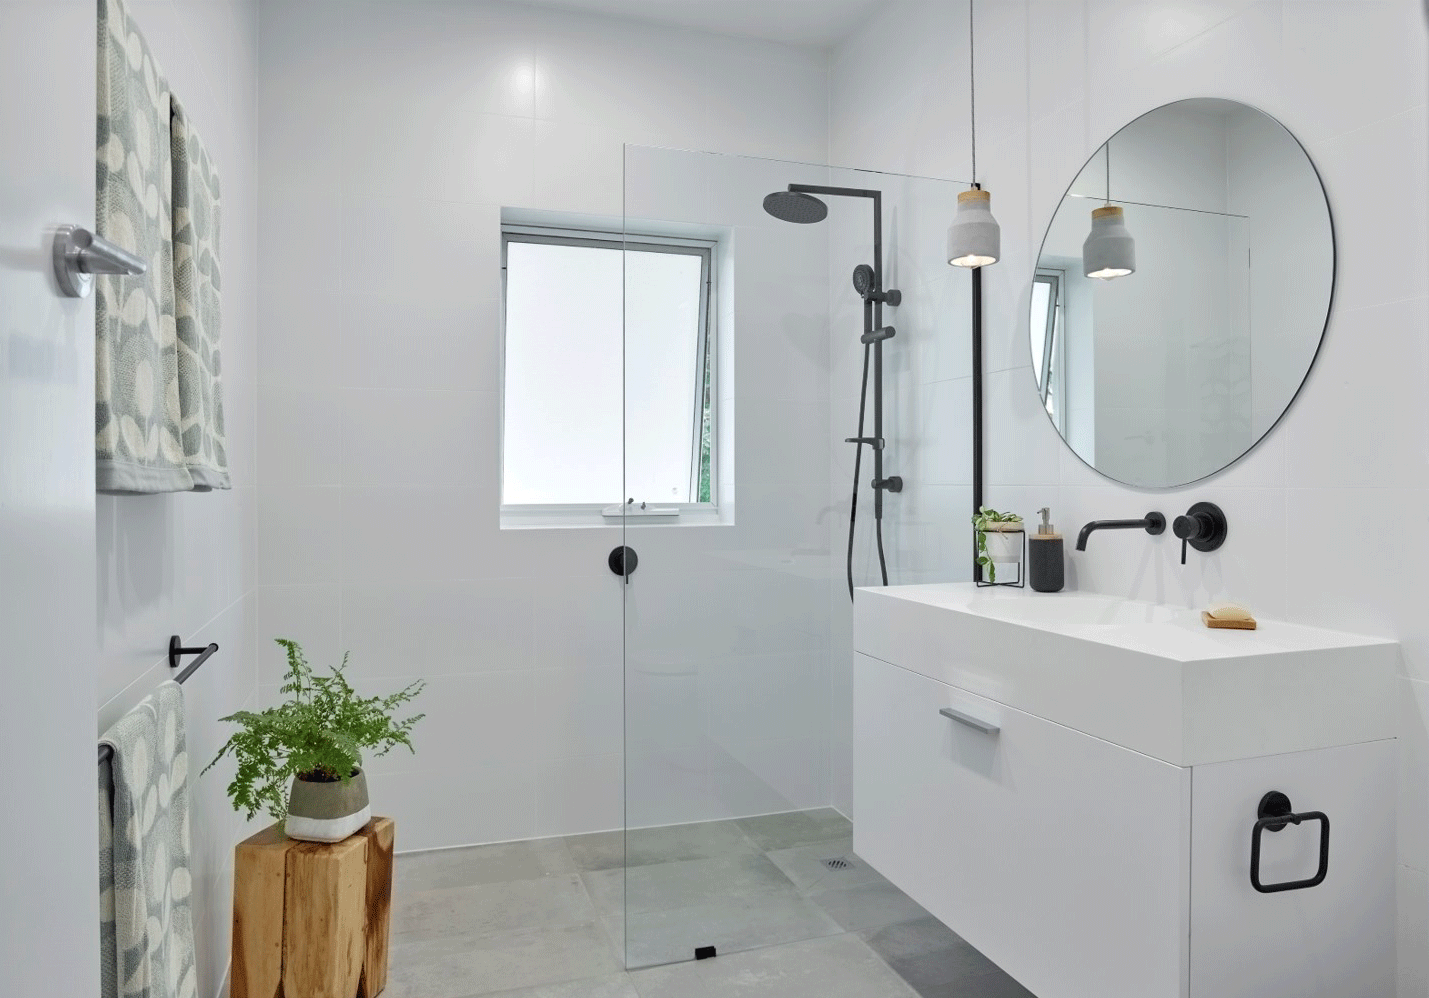 Vòi sen nên lắp thế nào để đủ không gian trong phòng tắm nhỏ